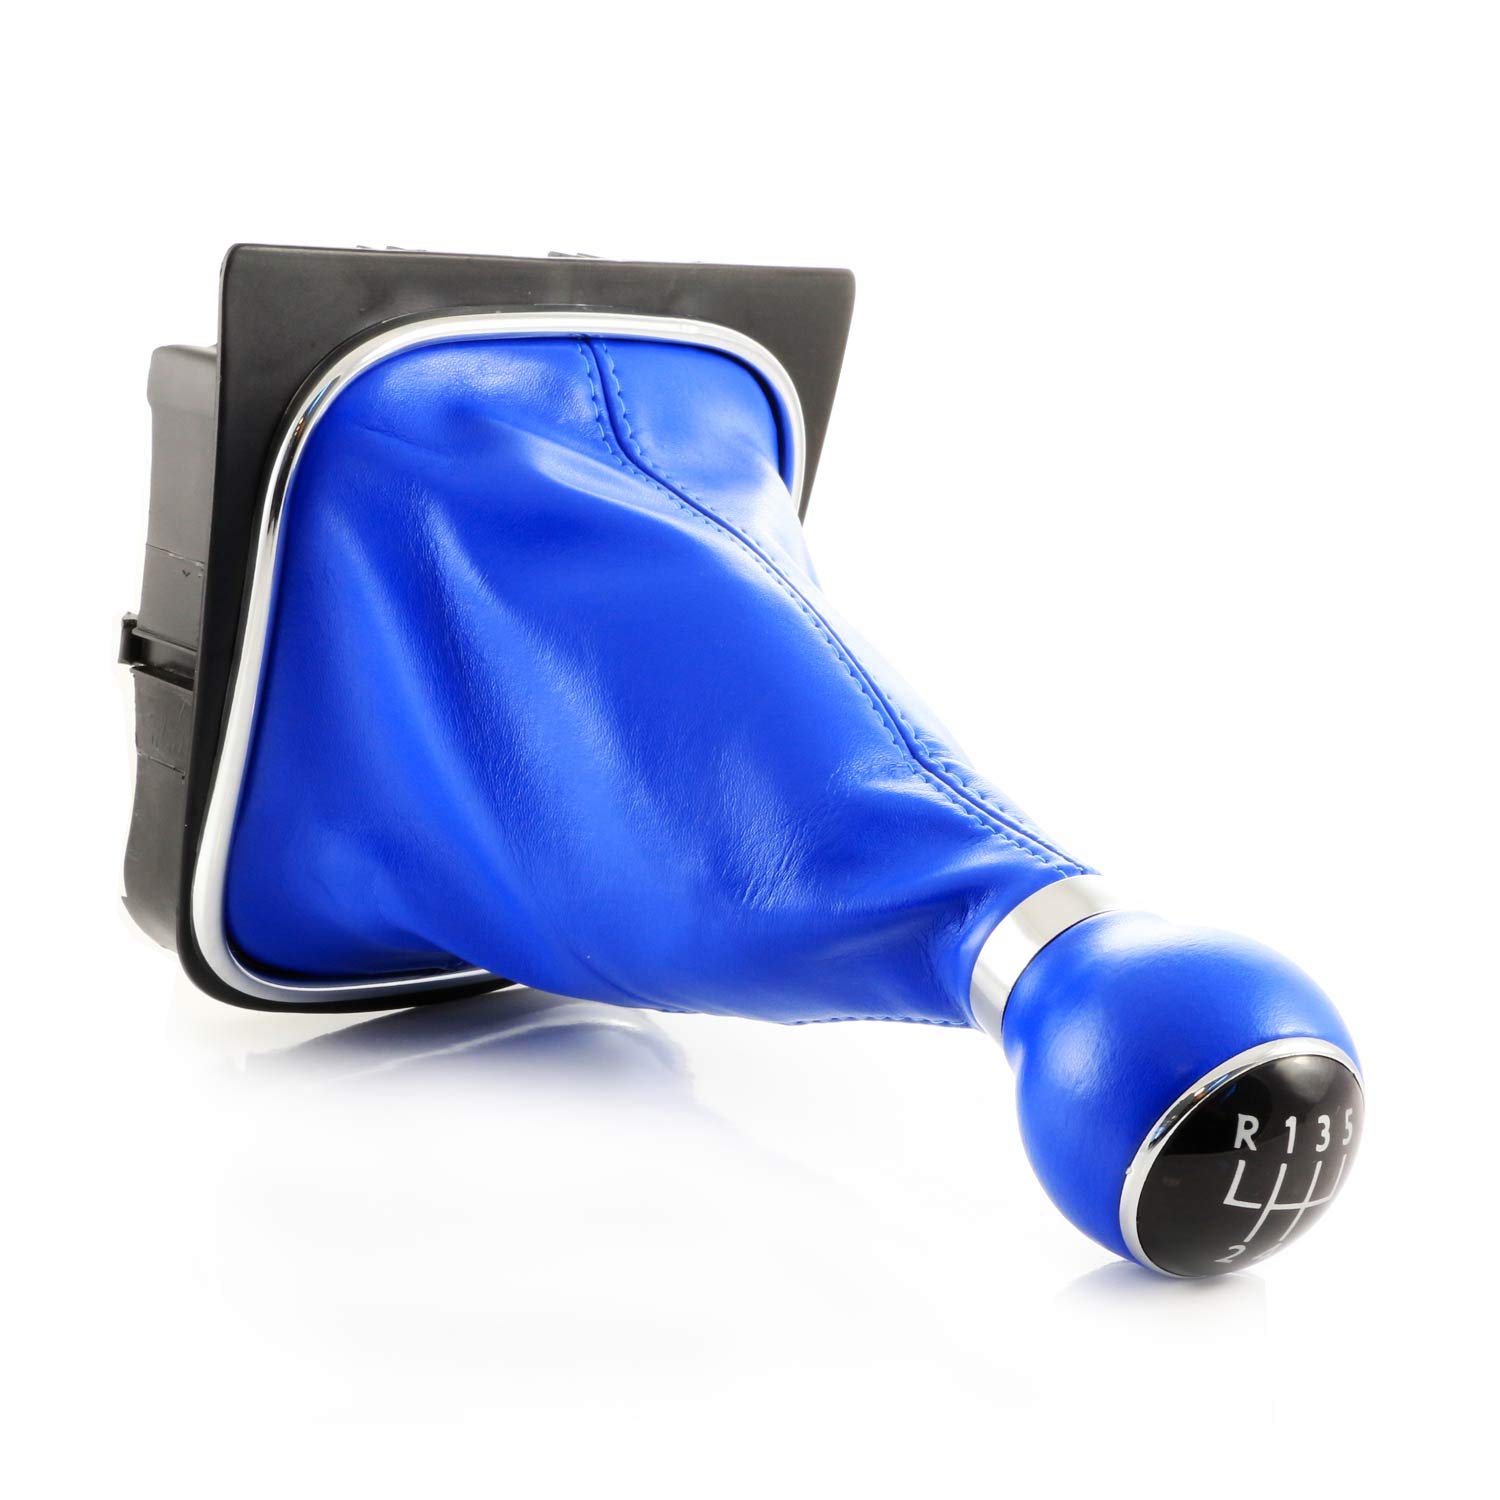 Blauer Schaltknauf + blauer Schaltsack + schwarzer Sockel für Golf MK5 mit Schaltgeschwindigkeitszahlen 1-5 & R von 24/7Auto